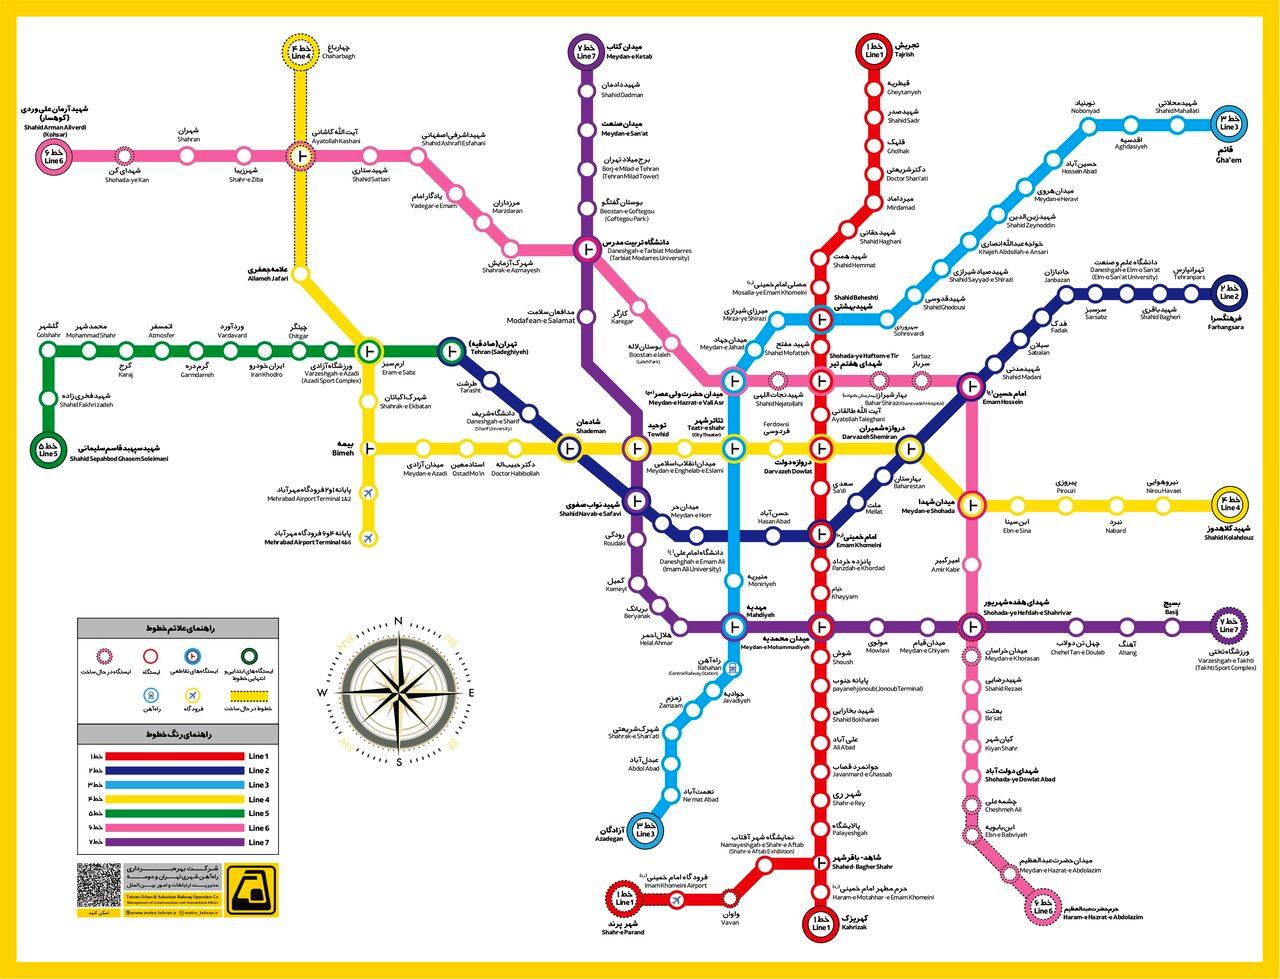  متروی تهران تغییر کرد؛ این مناطق به مترو وصل می شوند

